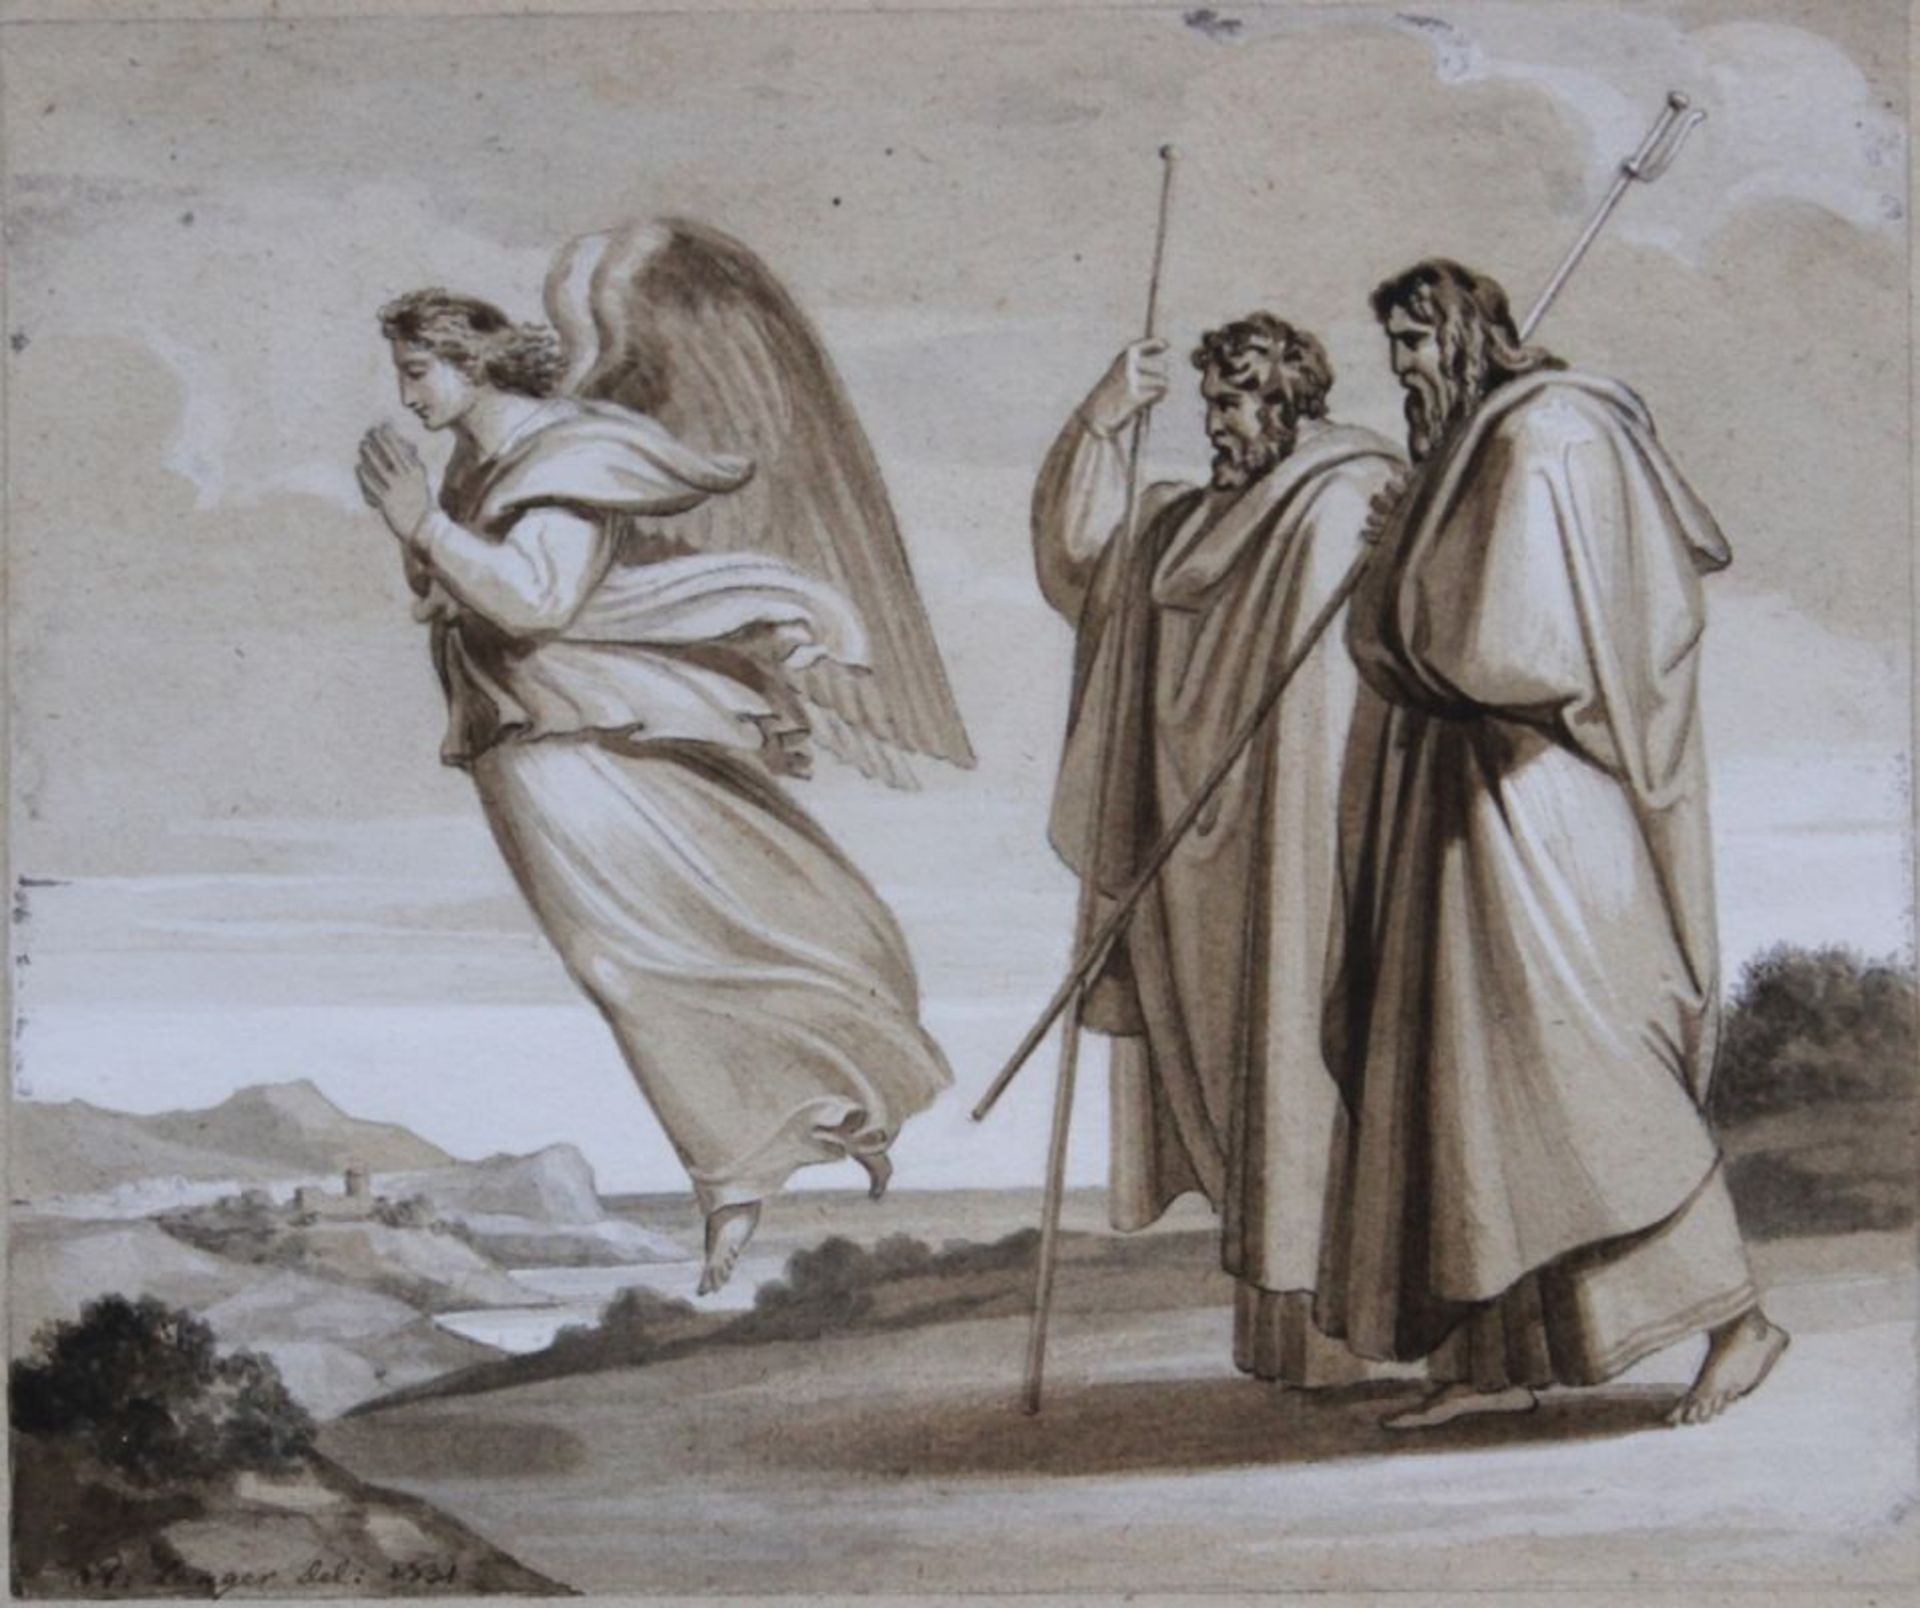 Zeichnung - Robert von Langer (1783 Düsseldorf - 1846 Haidhausen) "Zwei Apostel und Engel vor